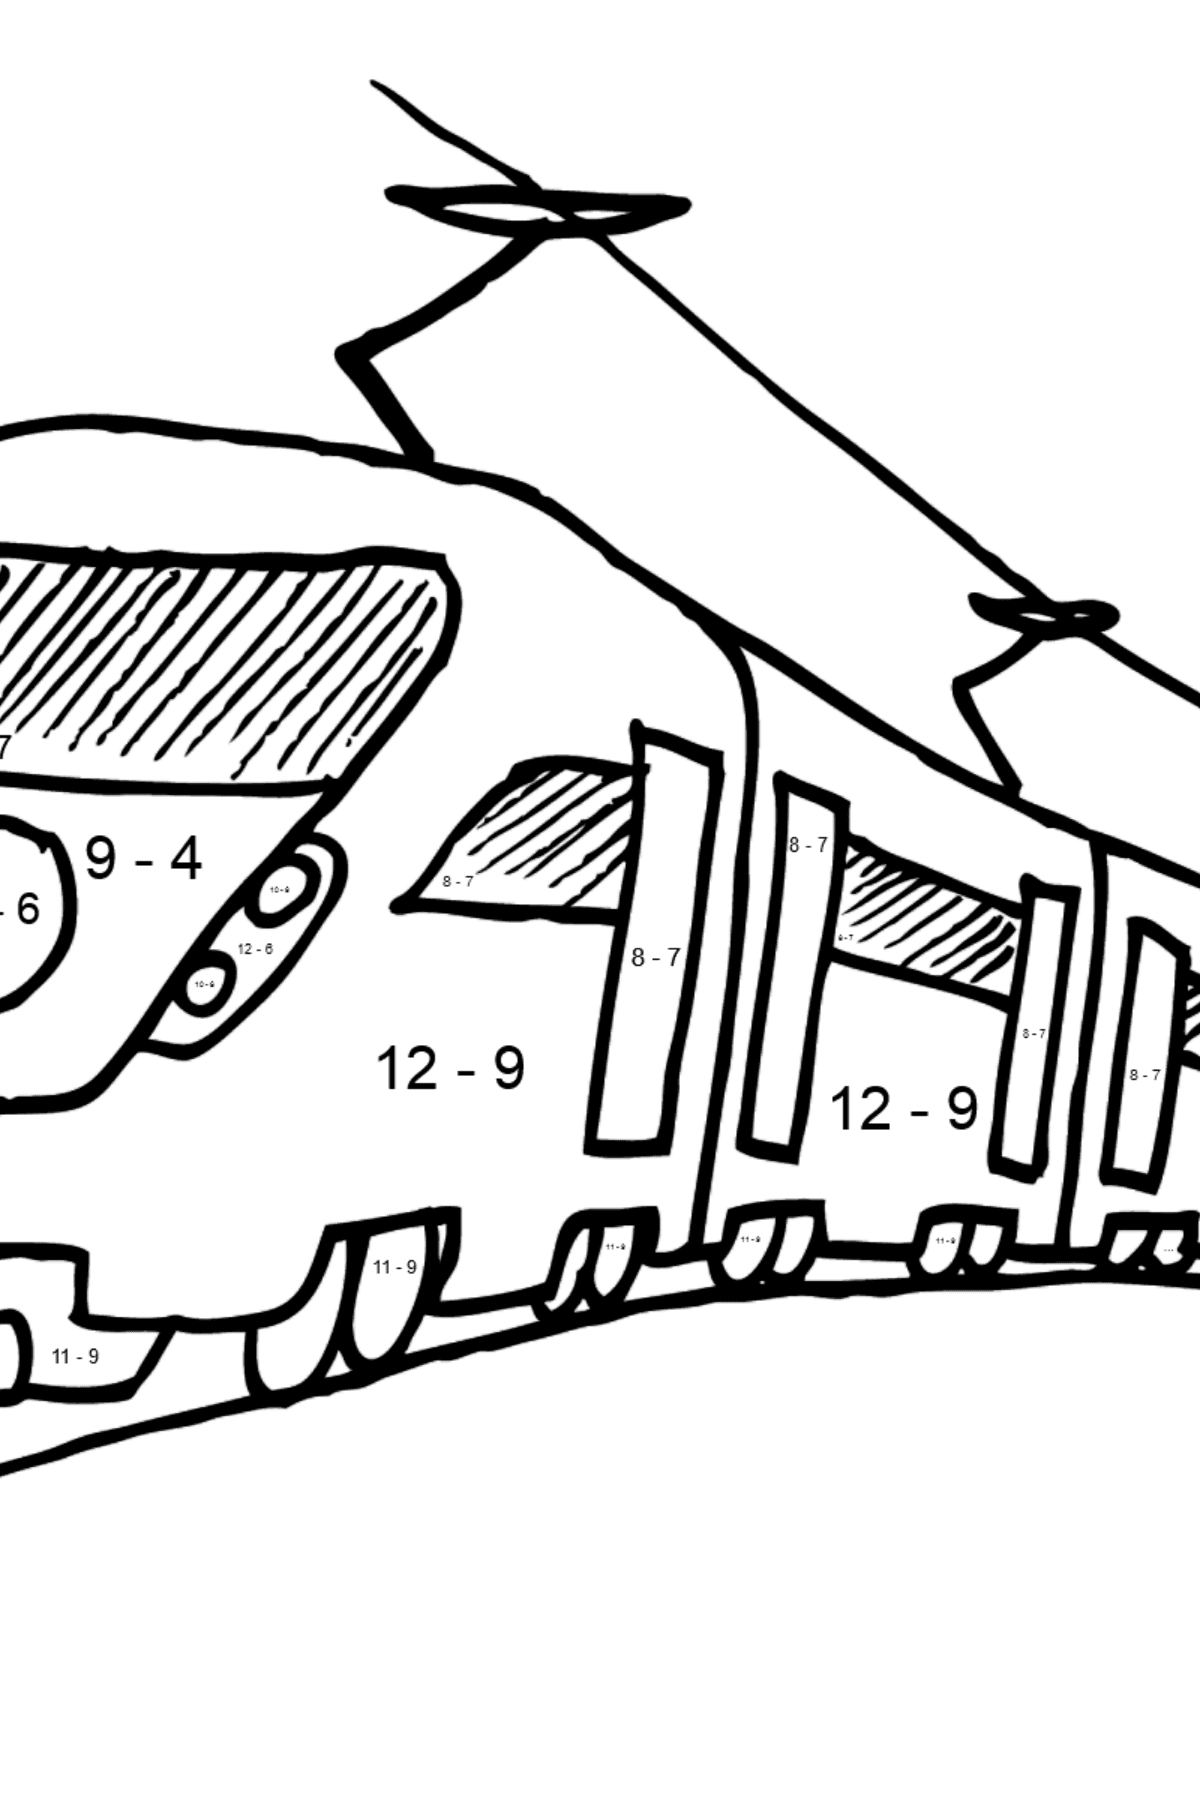 Malvorlage Zug Personenzug - Mathe Ausmalbilder - Subtraktion für Kinder